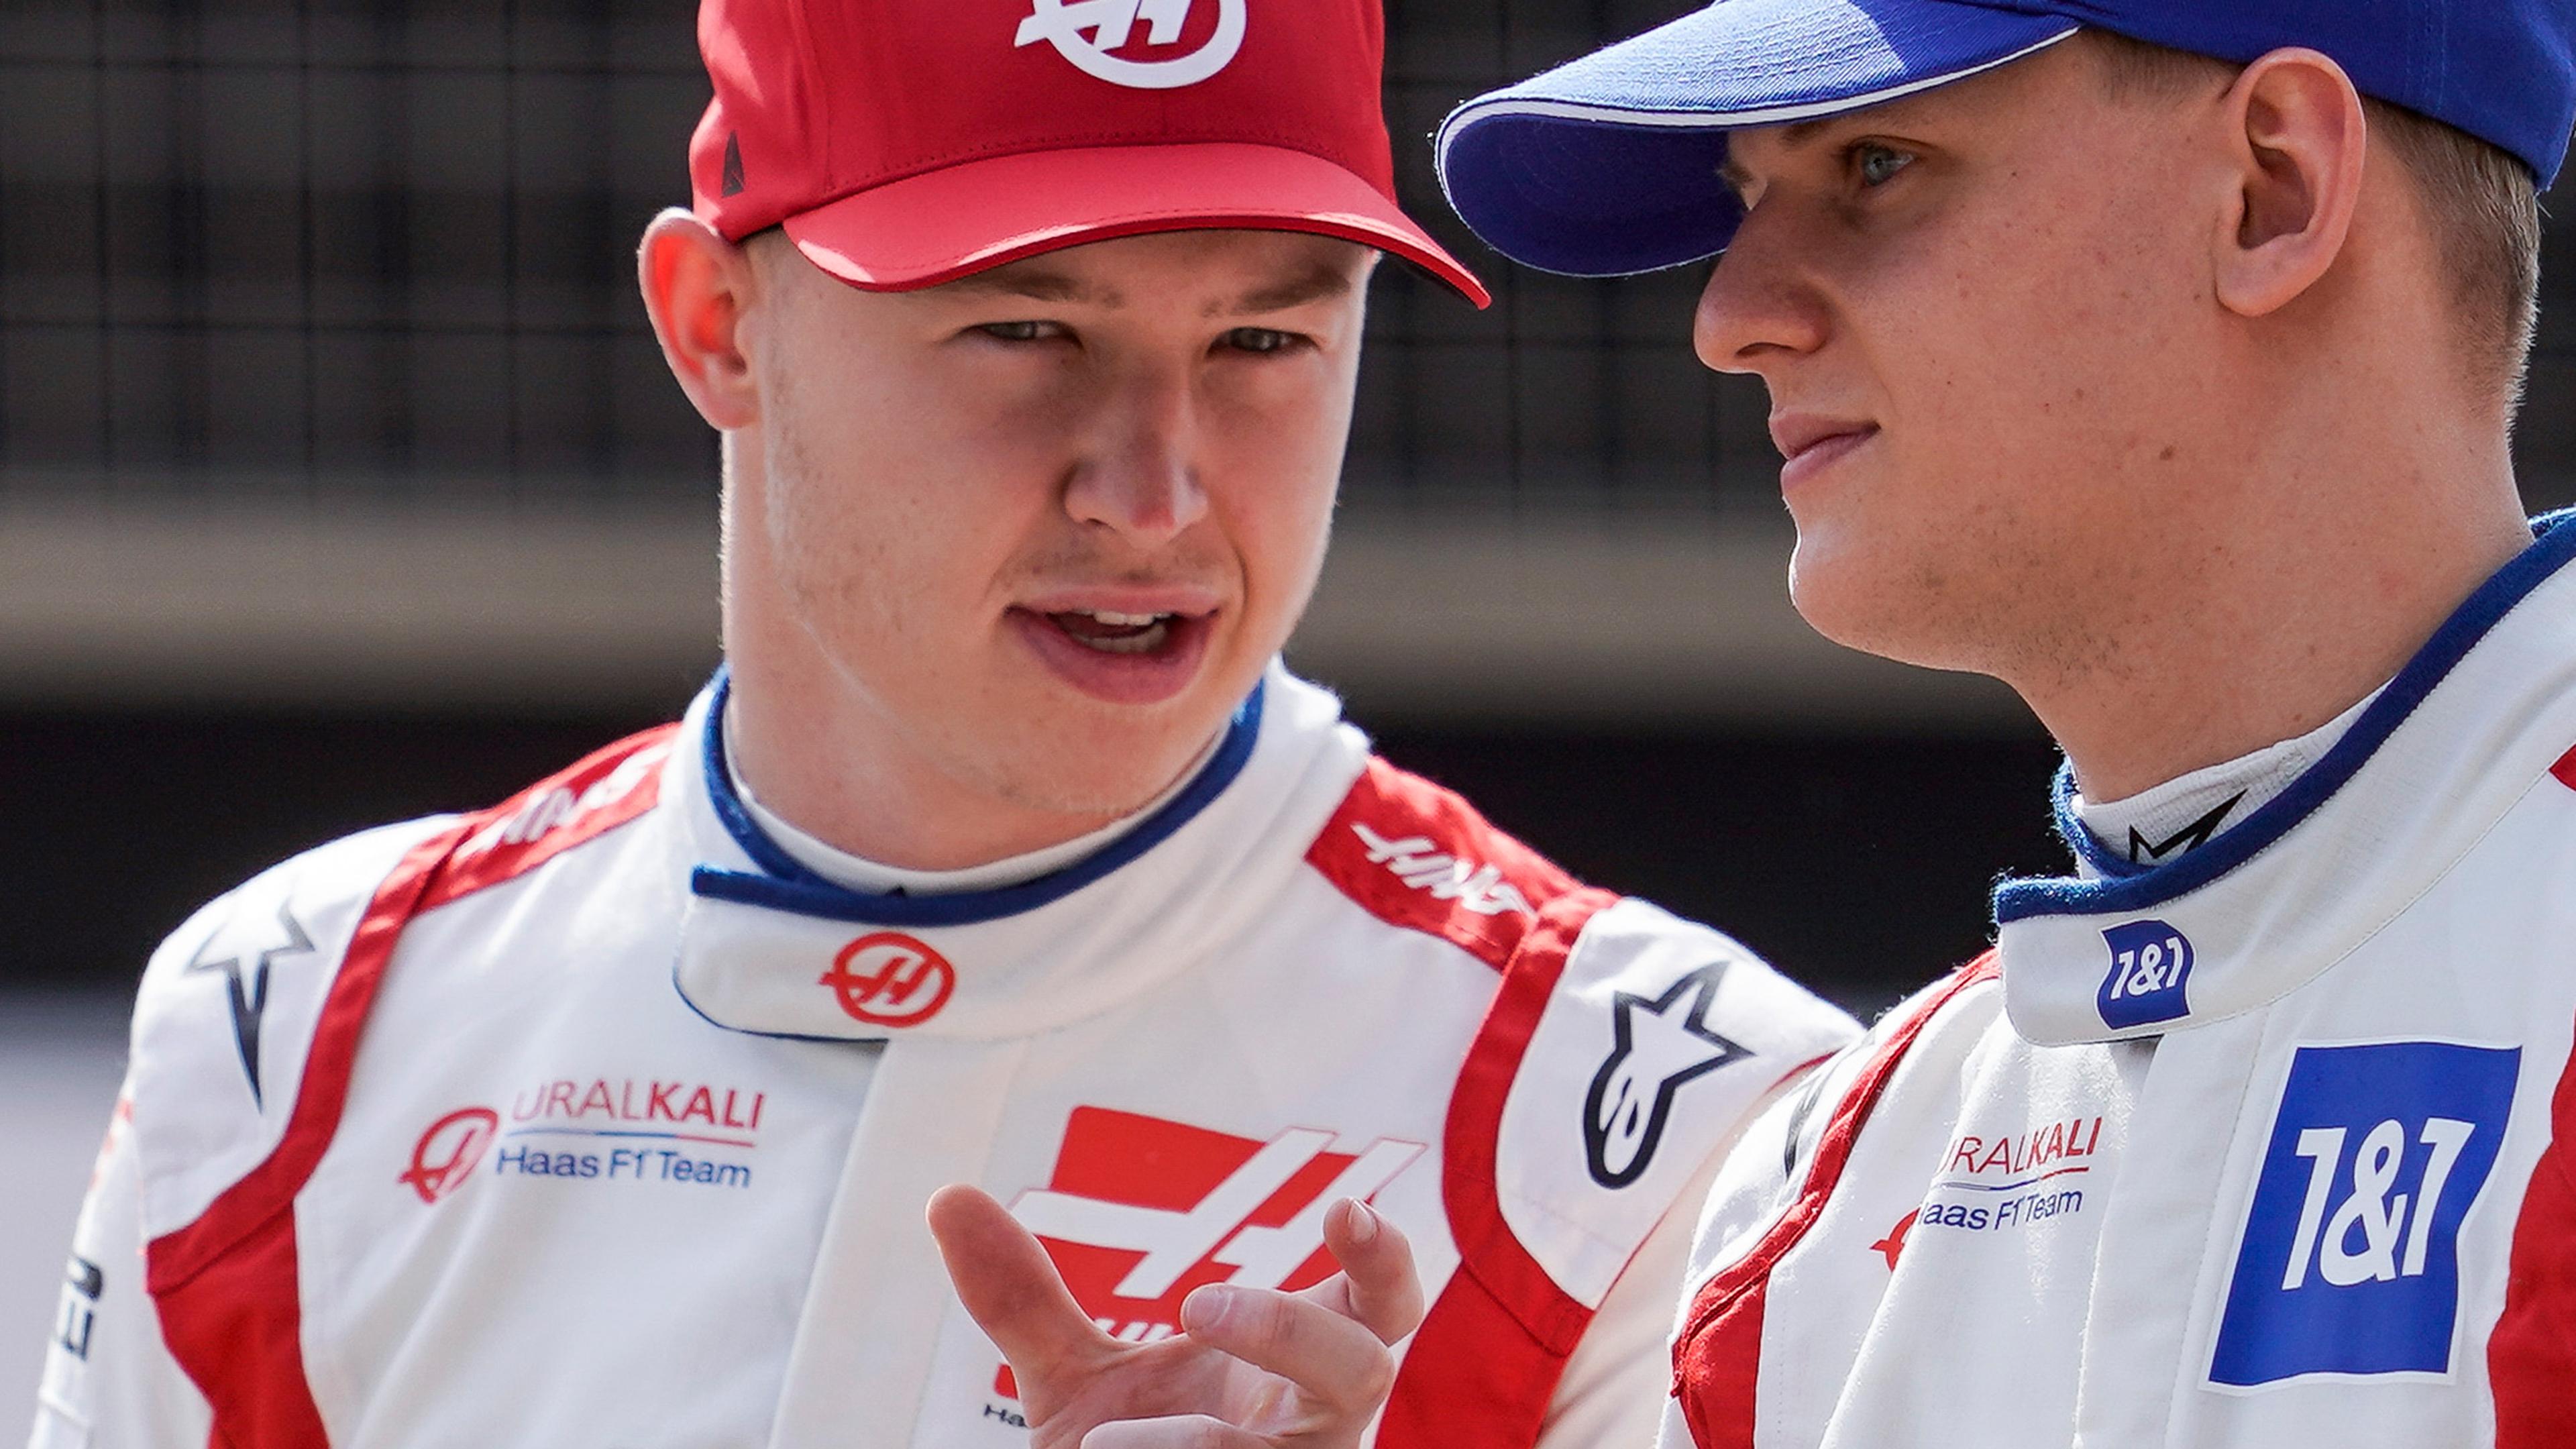 Nikita Masepin aus Russland (l.) und Mick Schumacher fuhren gemeinsam für das Haas-Team.